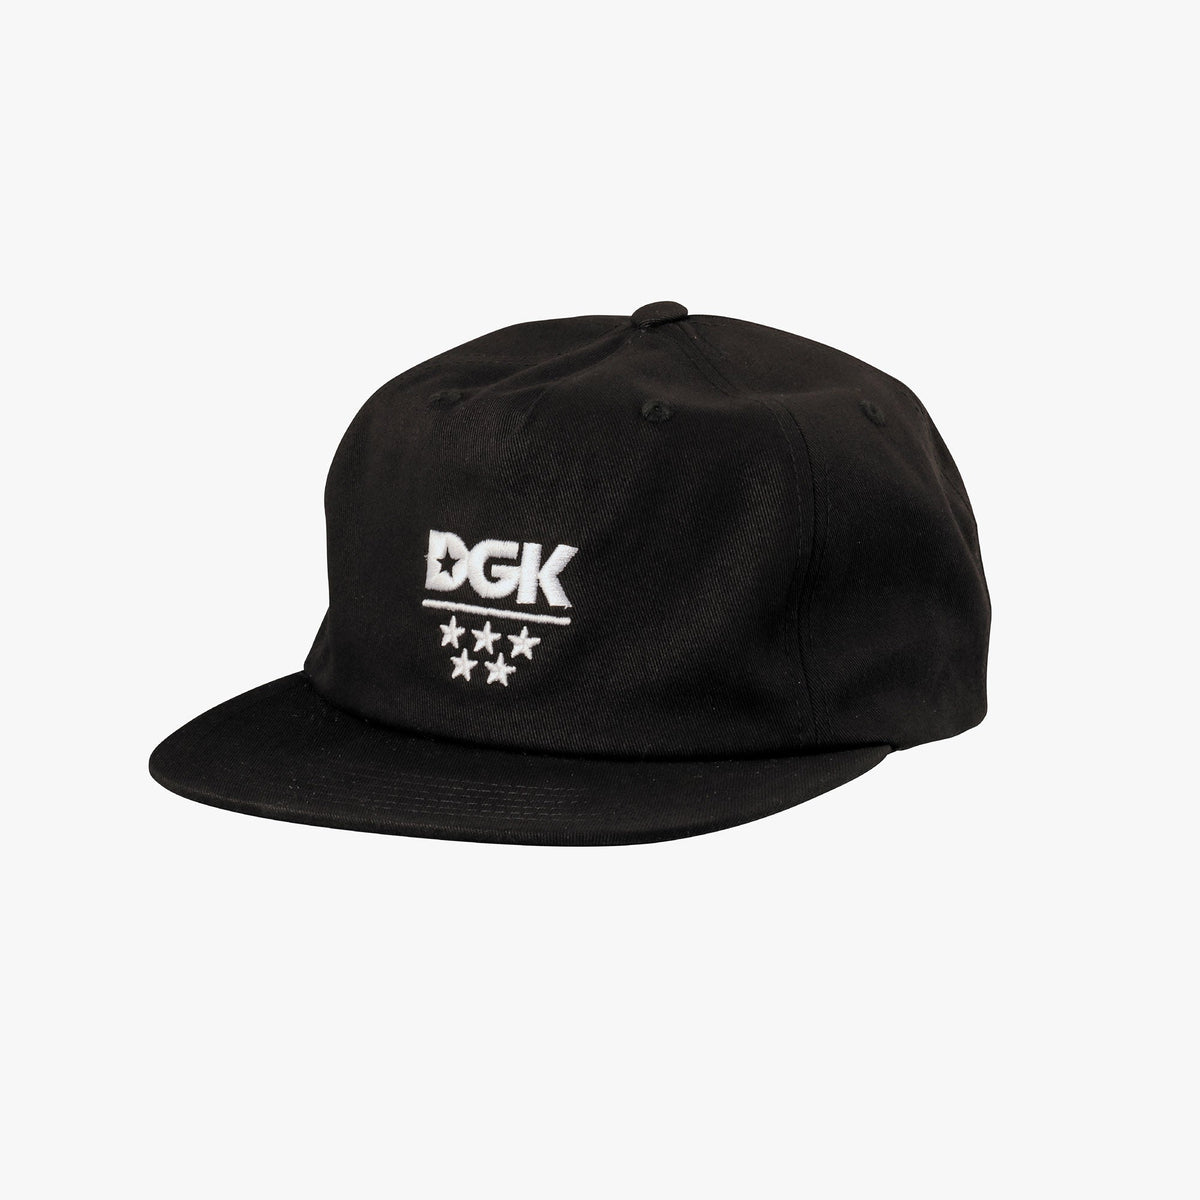 Dgk x White Sox– DGK Official Website